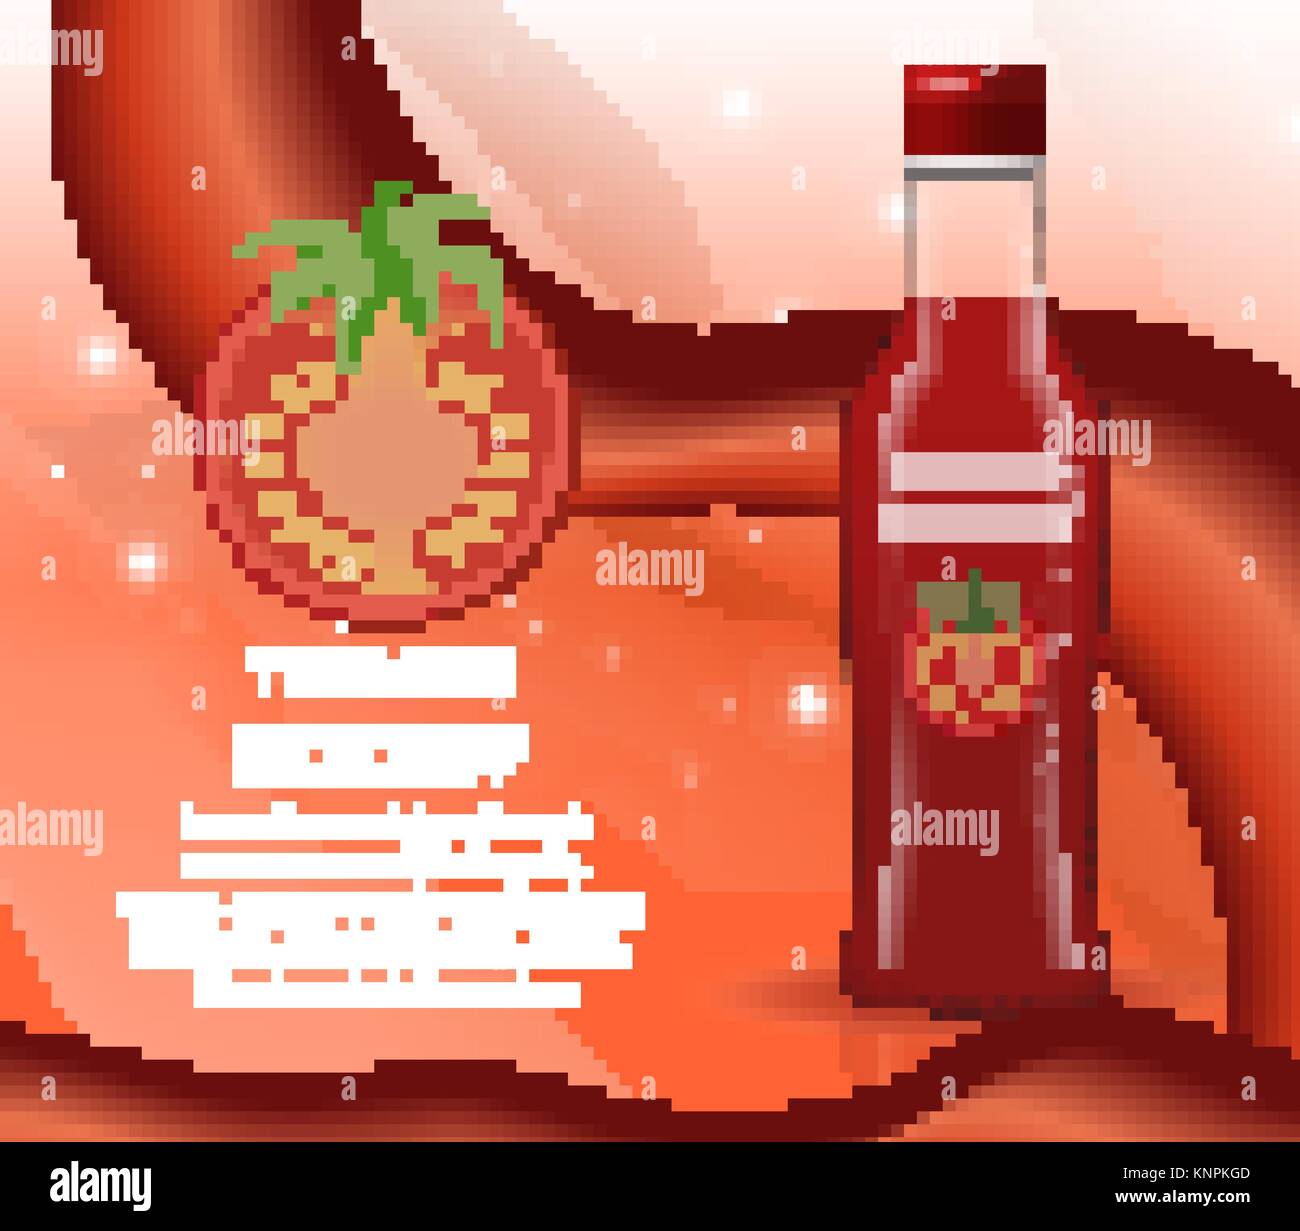 Le ketchup dans une bouteille en verre, style 3D réaliste. Papkrika sauce rouge, piment. Mock-up pour votre conception de produits. Vector illustration. Illustration de Vecteur